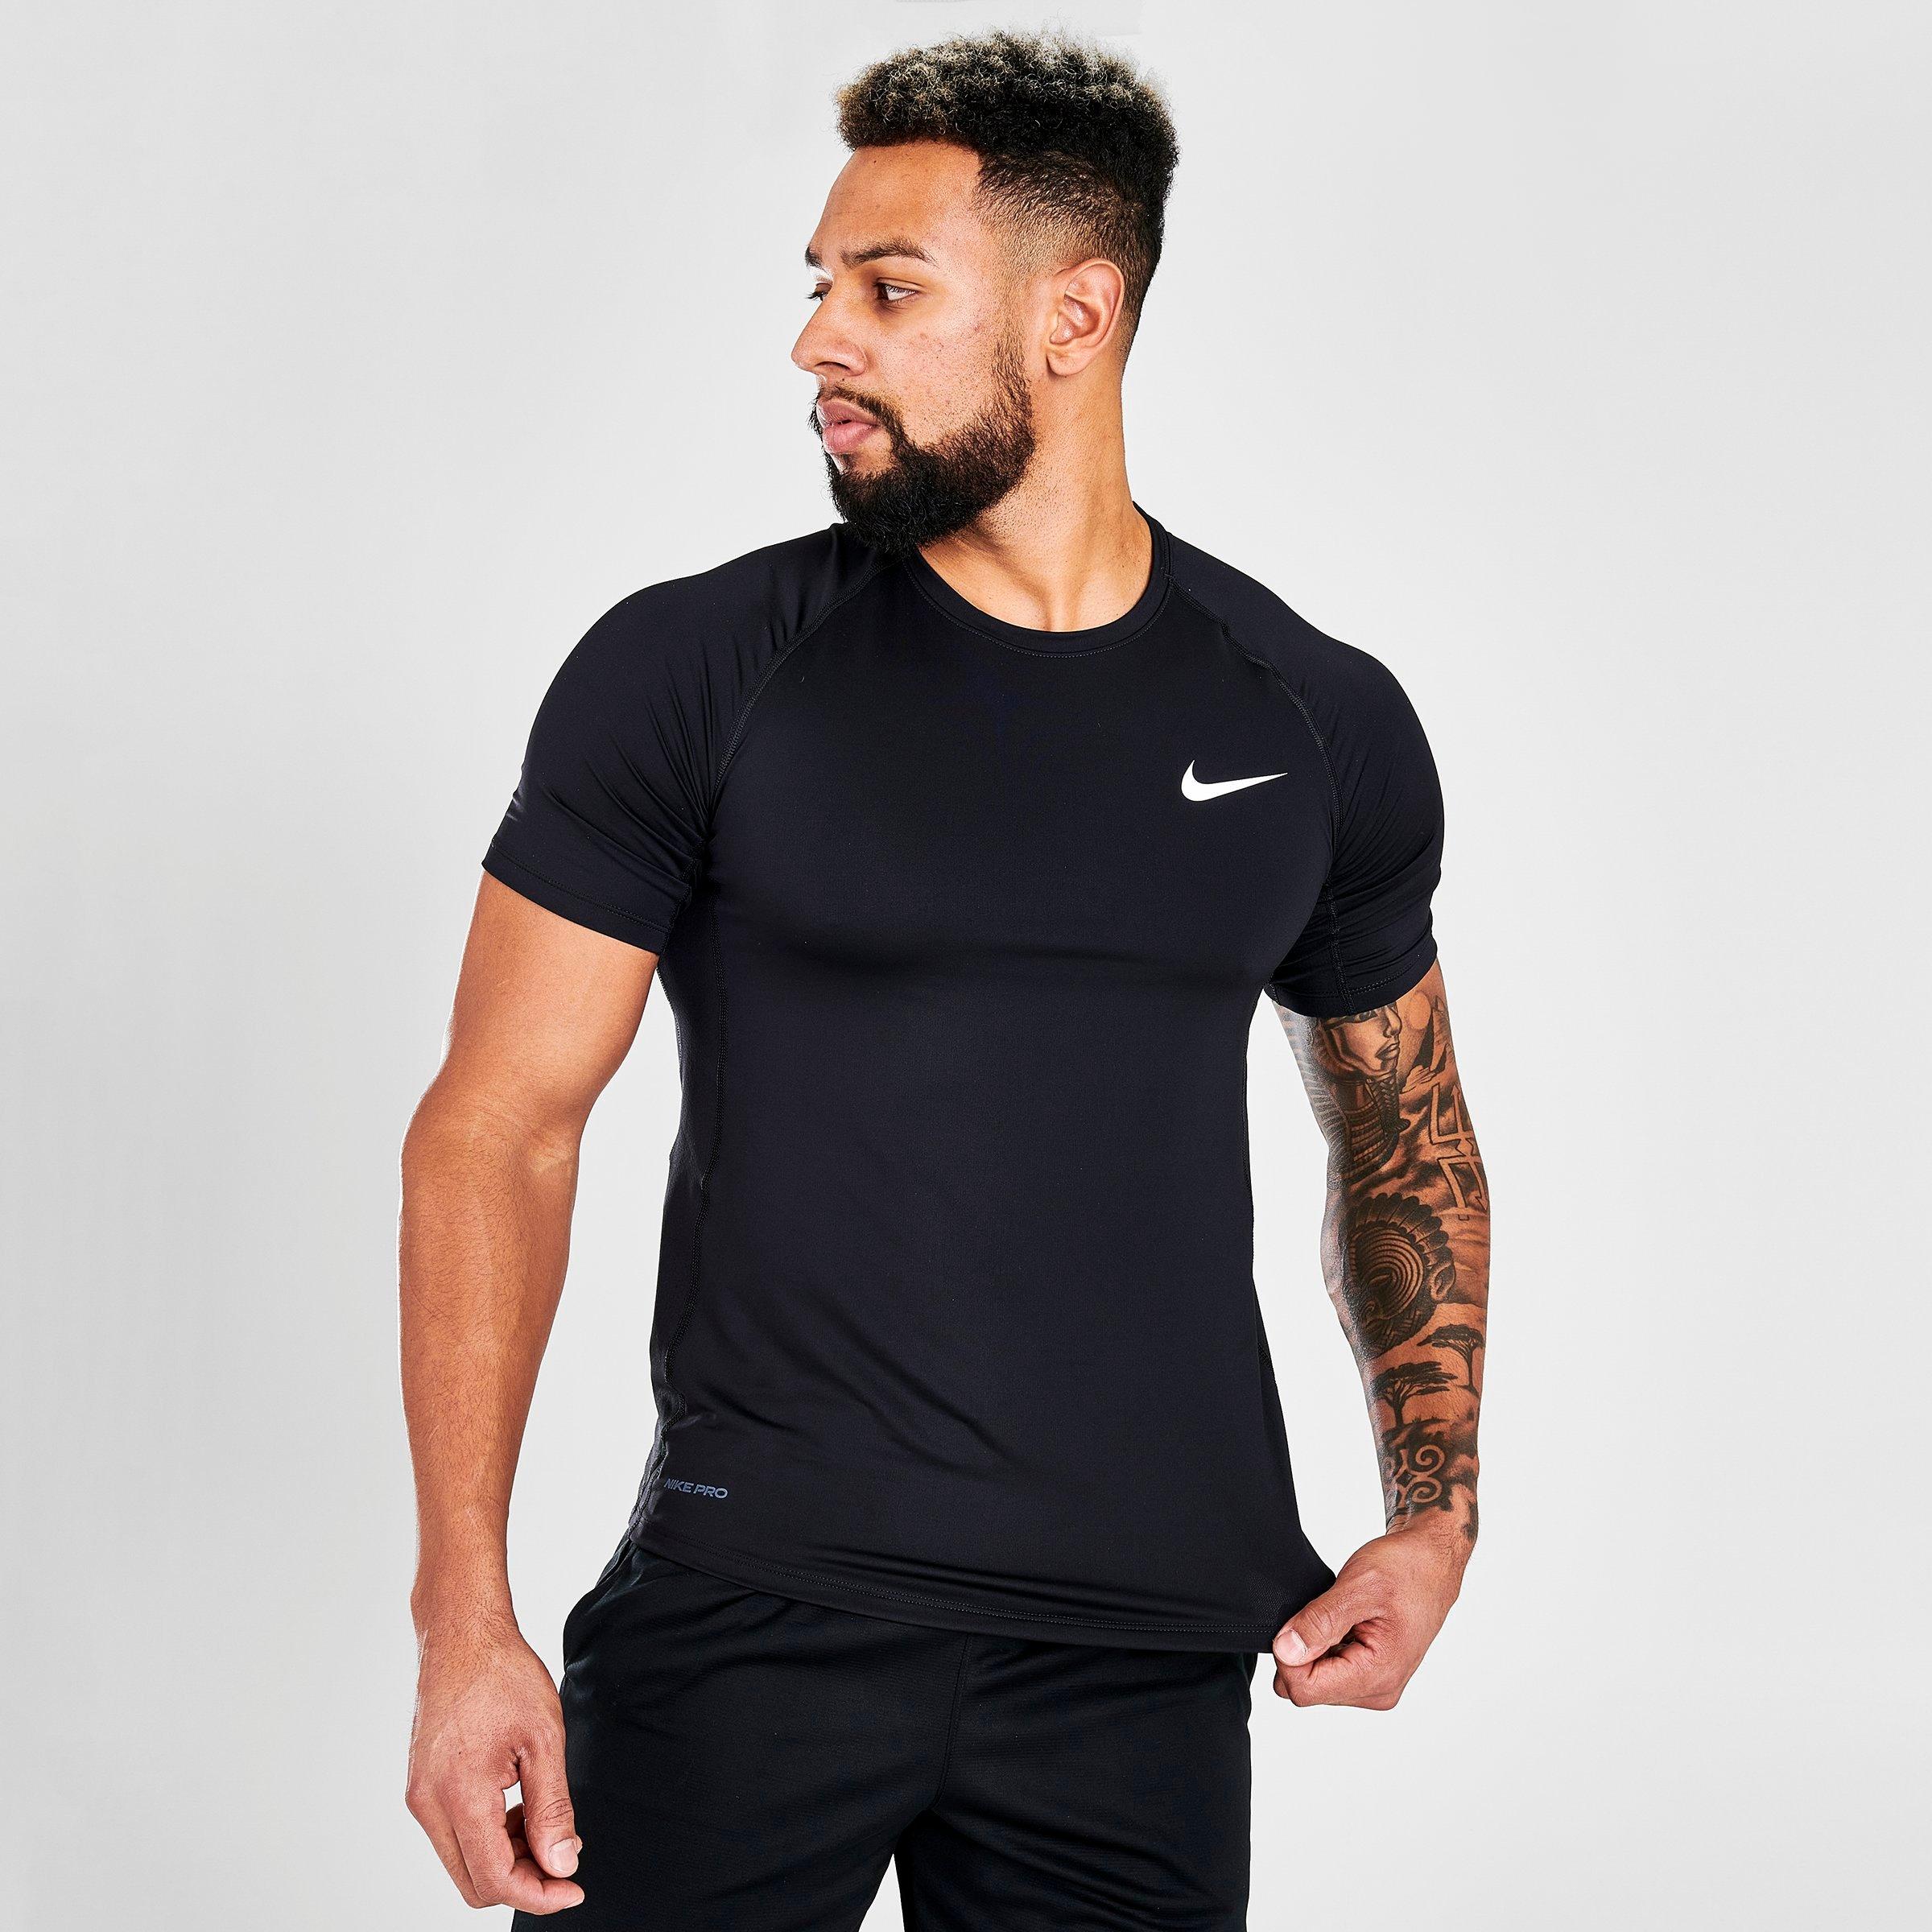 Men's Nike Pro Slim T-Shirt| Finish Line